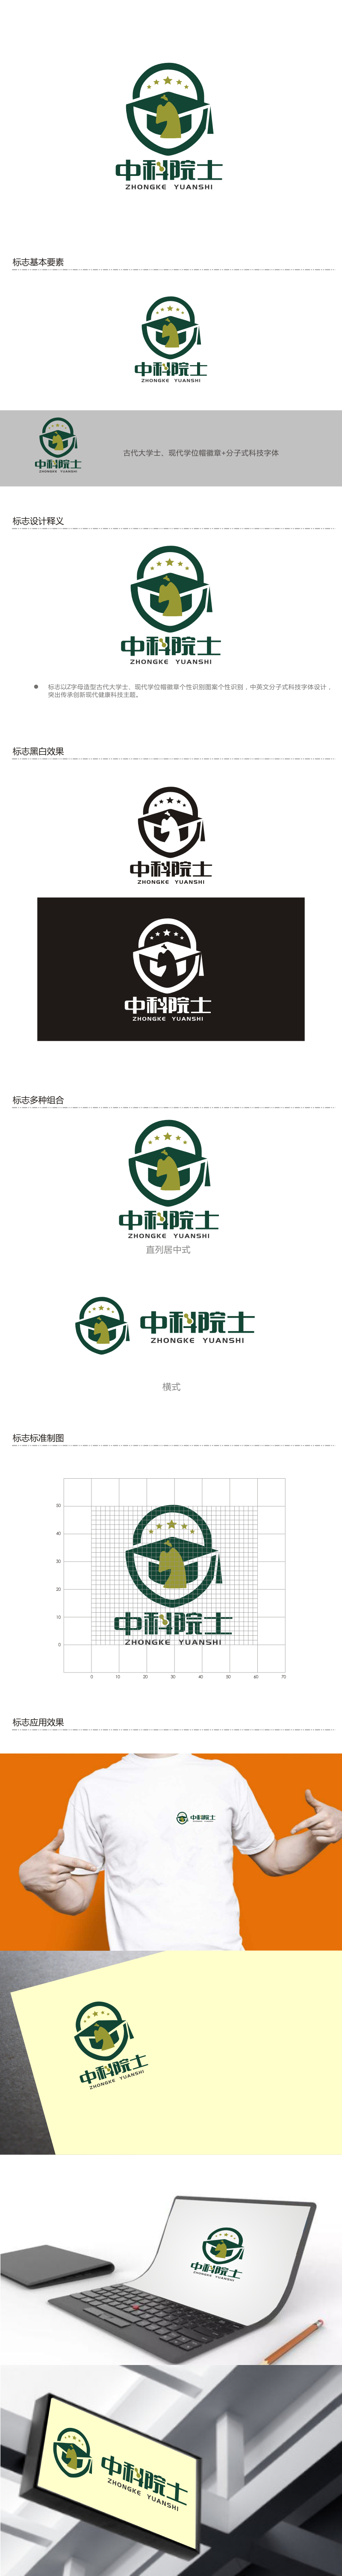 姜彦海的中科院士logo设计